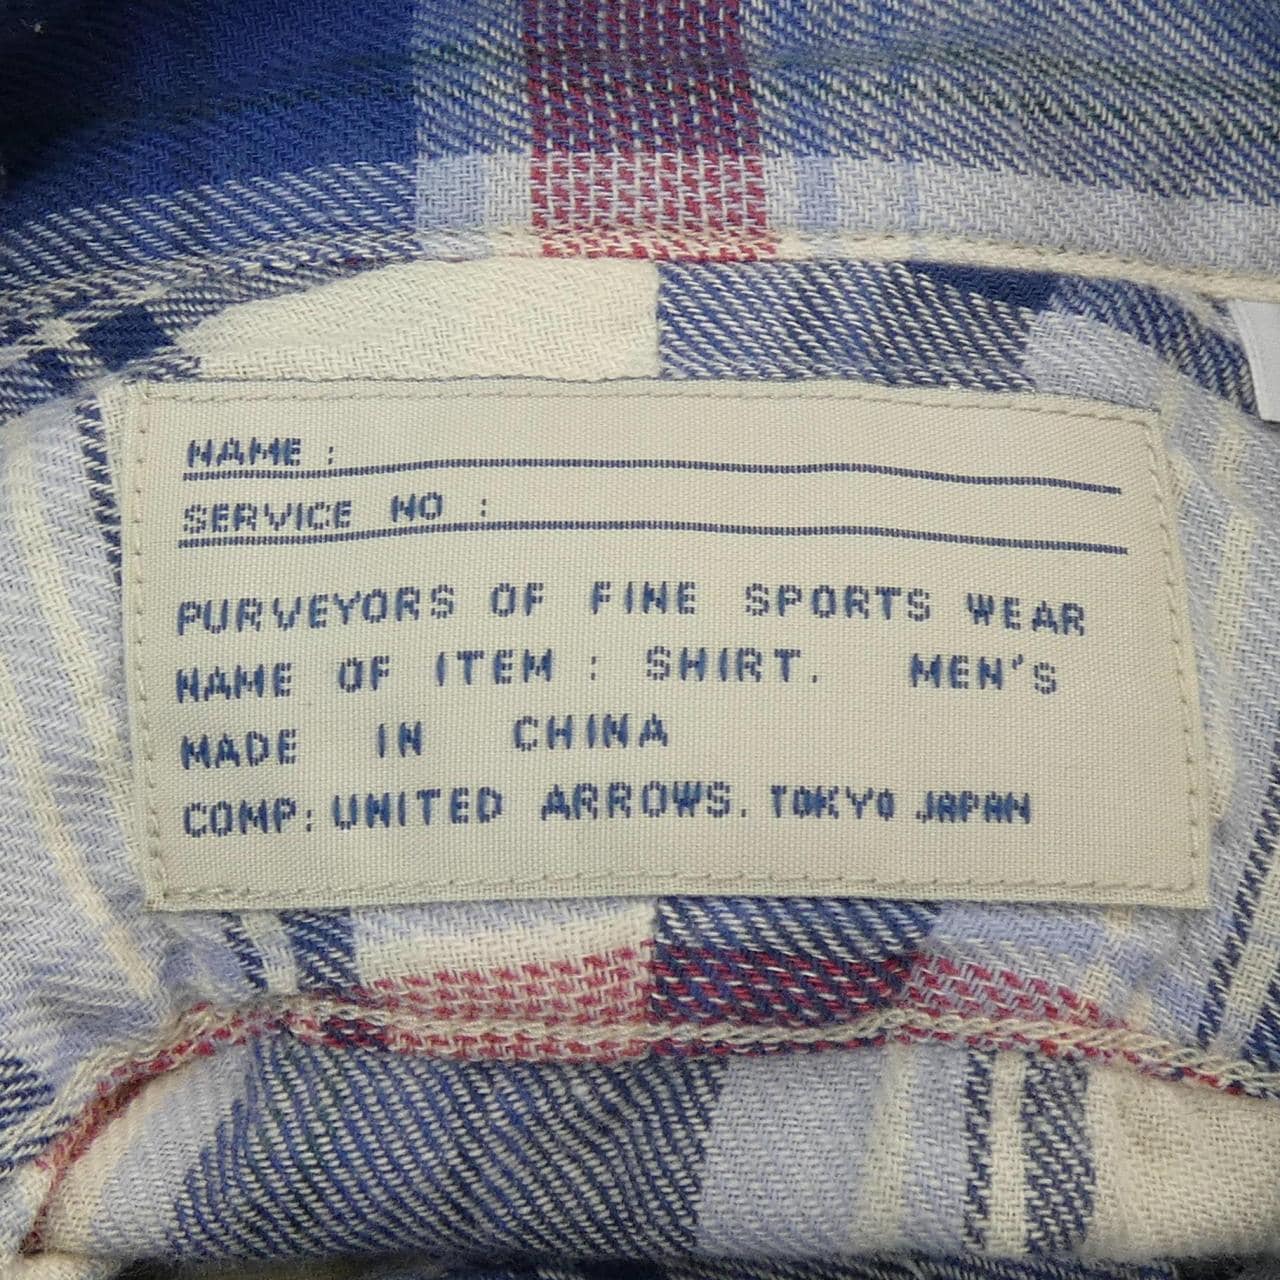 UNITED ARROWS衬衫